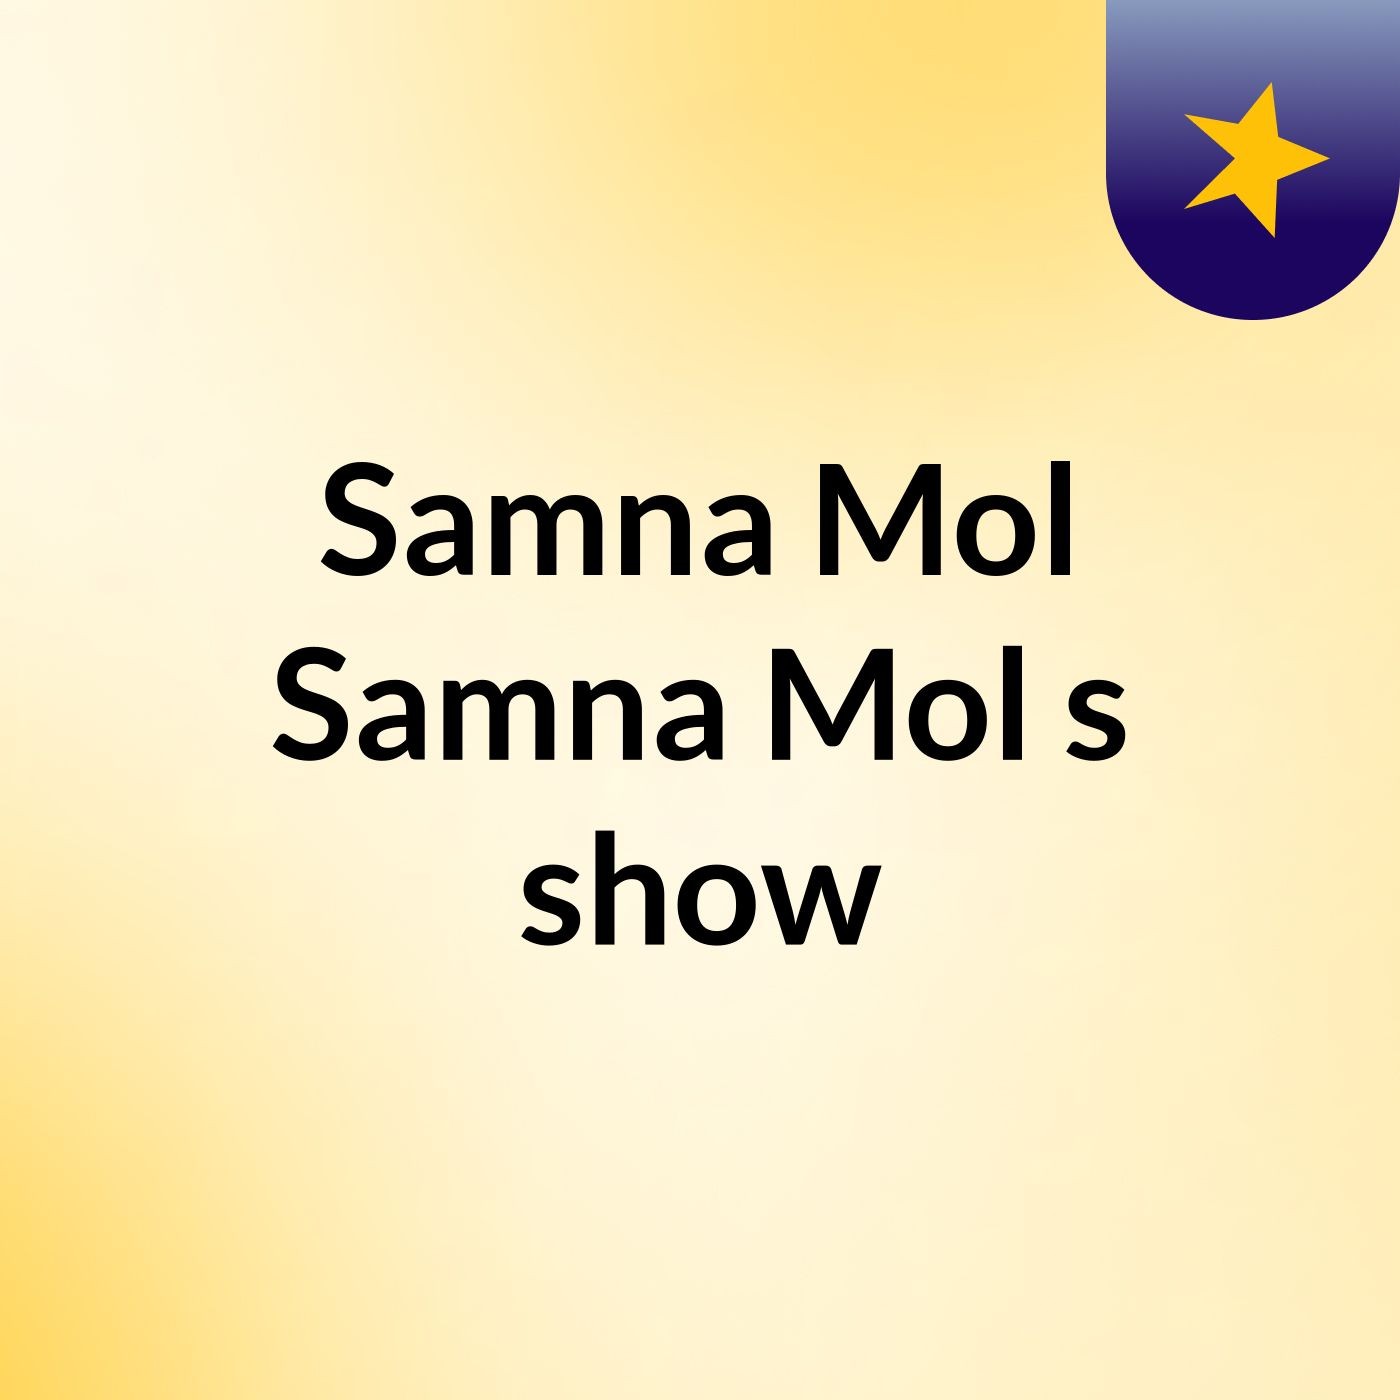 Samna Mol Samna Mol's show